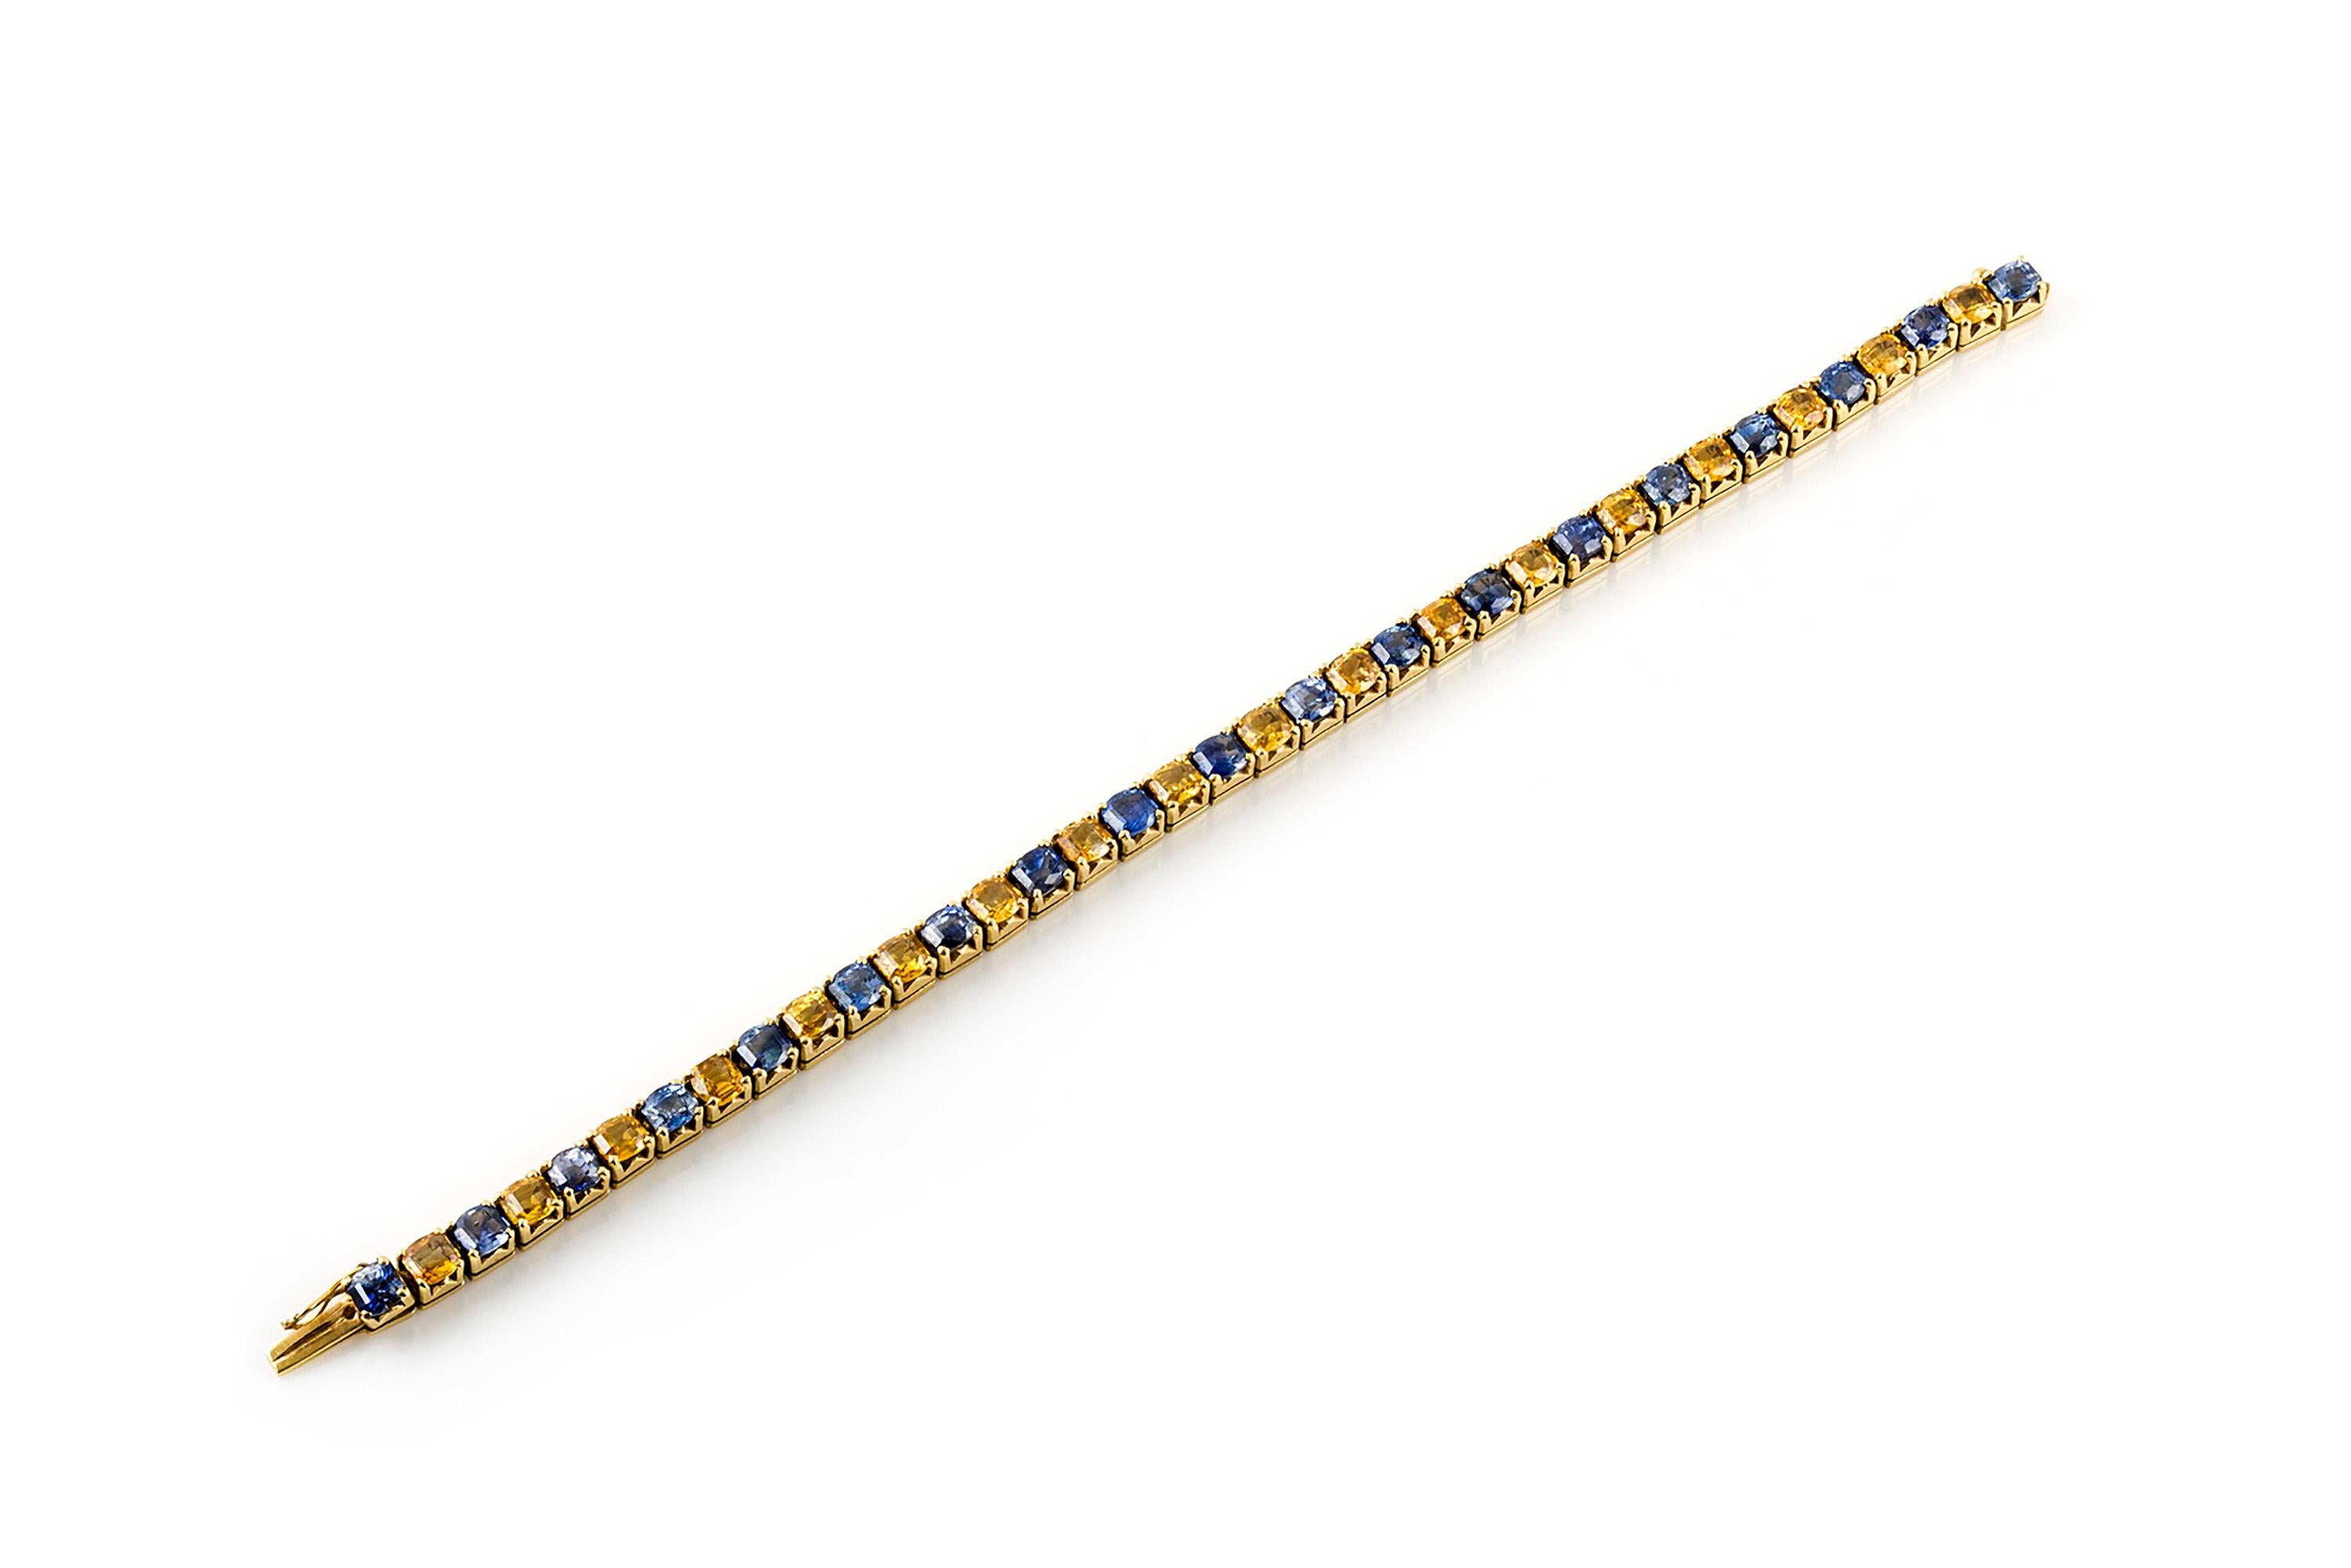 Tennisarmband, fein aus Gold gefertigt, mit blauen und gelben Saphiren von insgesamt 34,20 Karat. Die Länge des Armbands beträgt 7,5 Zoll/18,5 cm. Ca. 1970er Jahre.